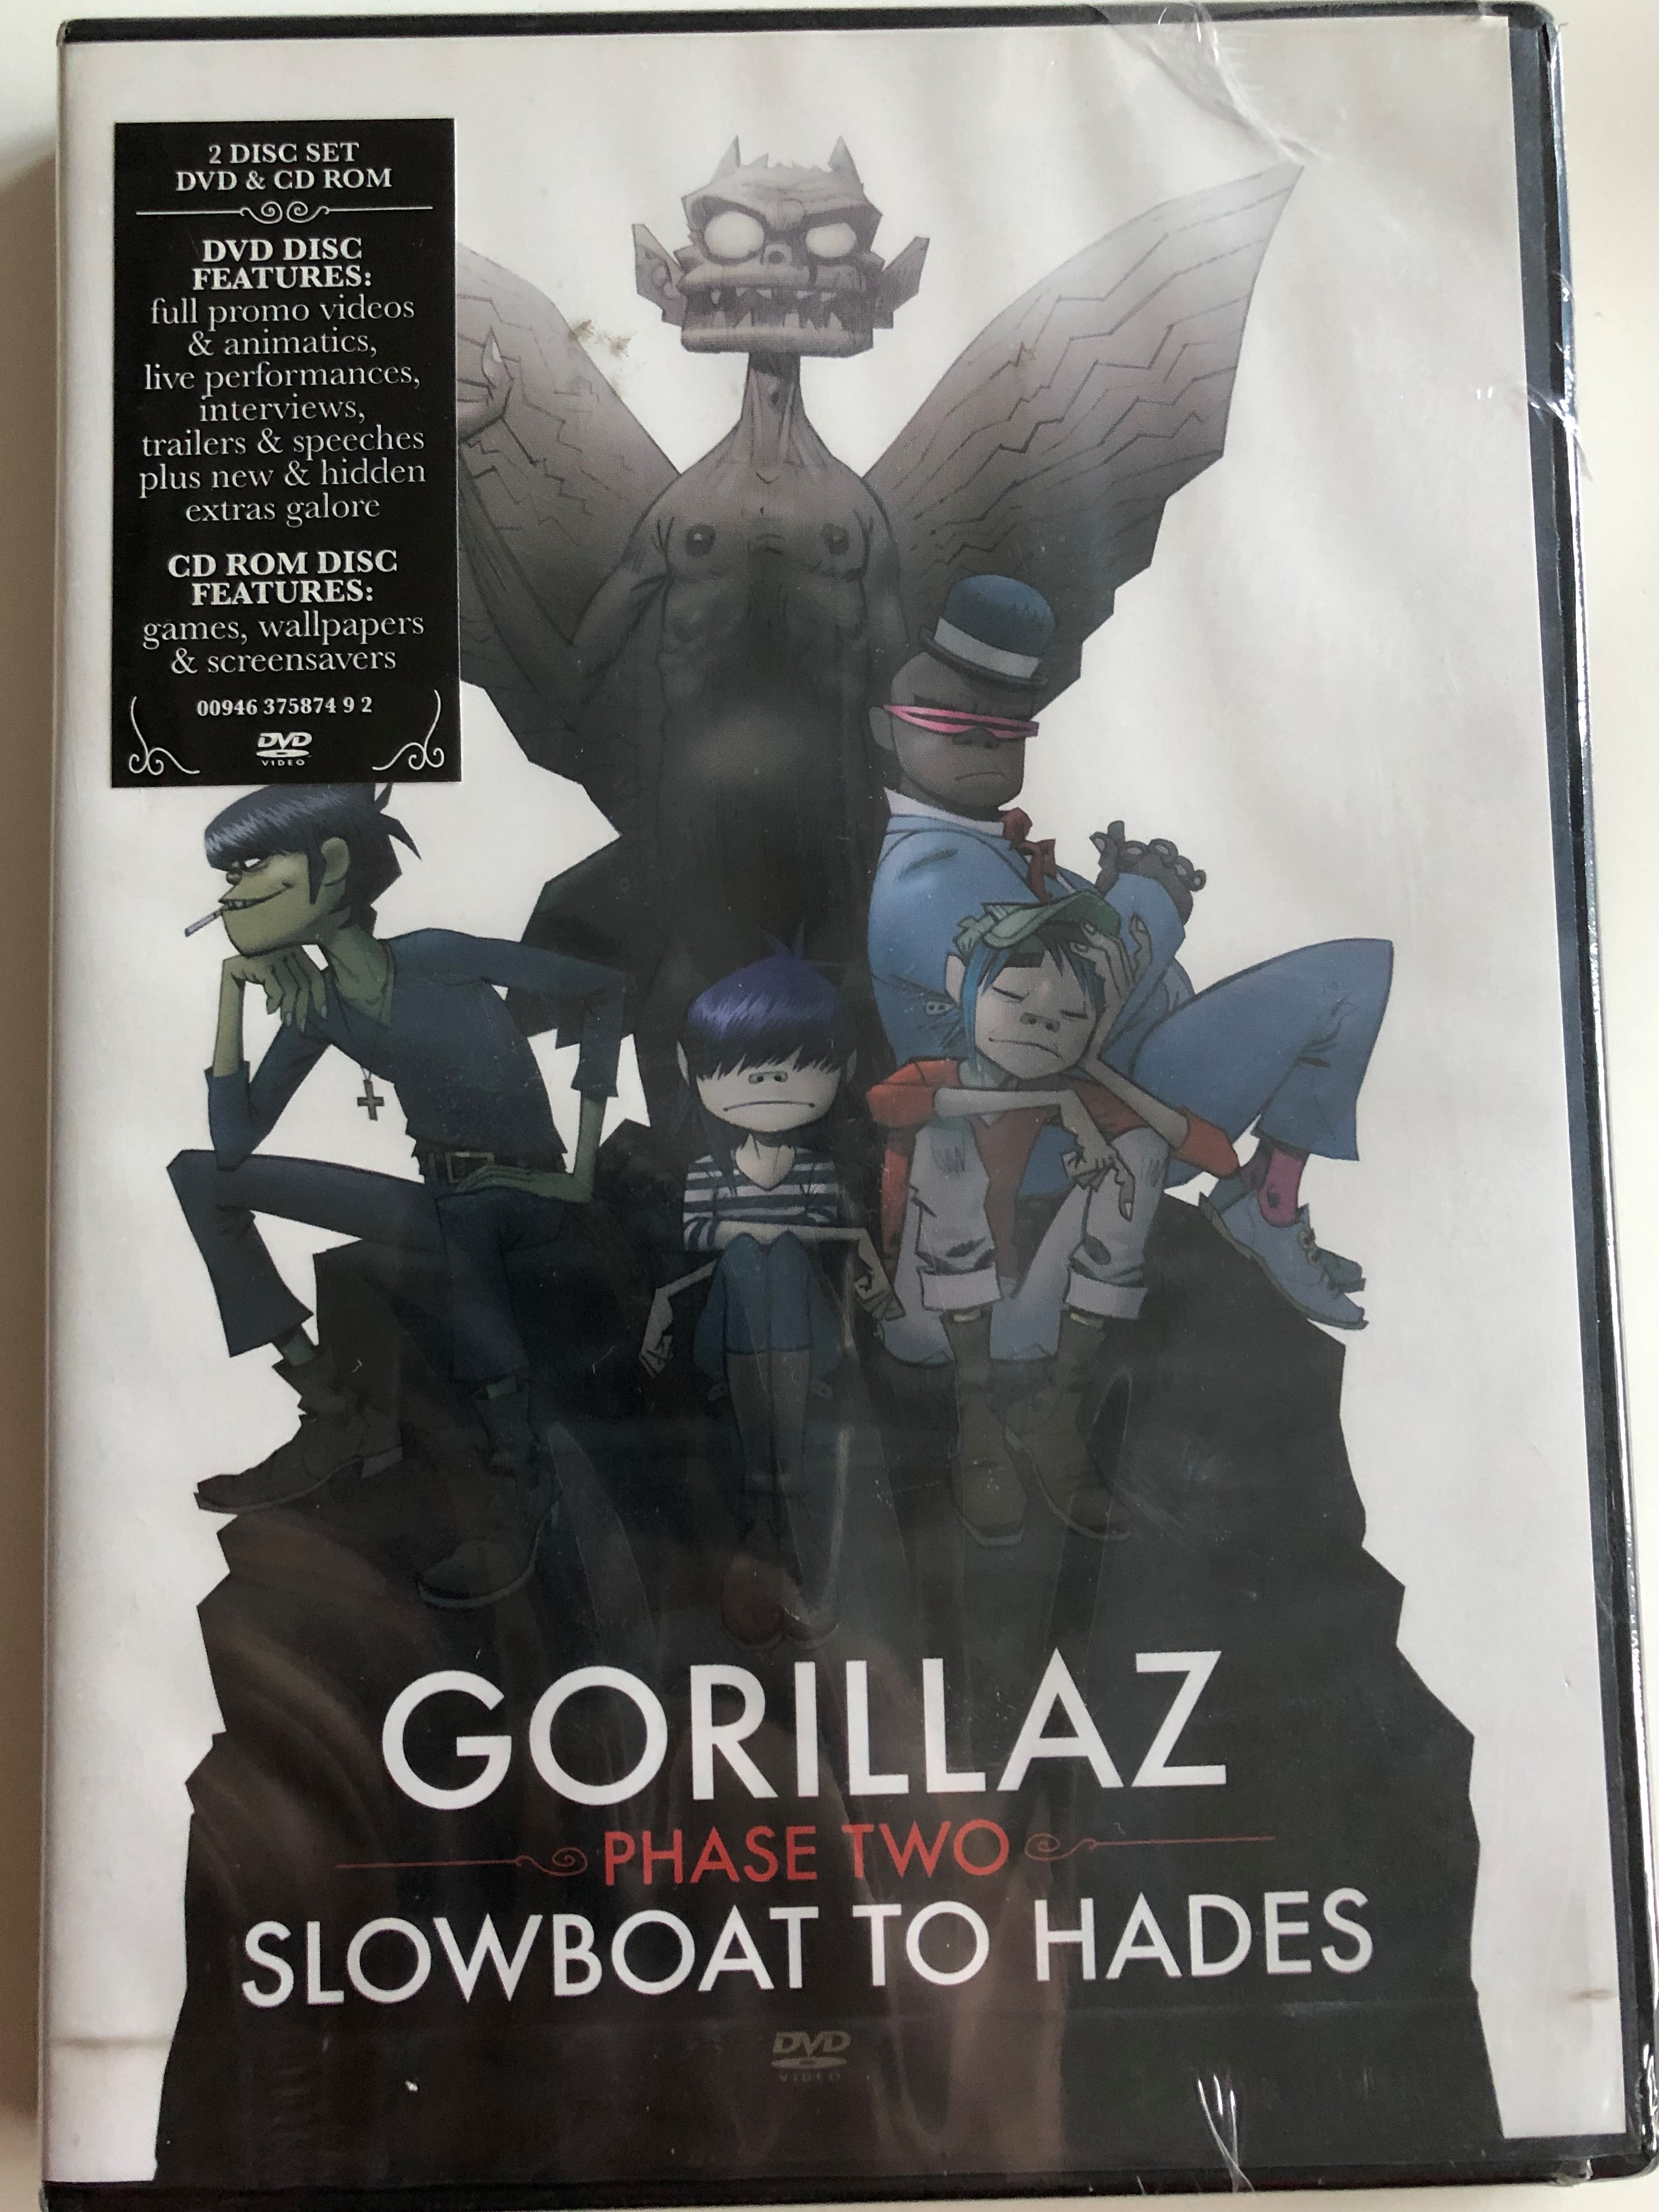 Gorillaz - Phase Two - Slowboat to hades 2 Disc Set 1.JPG